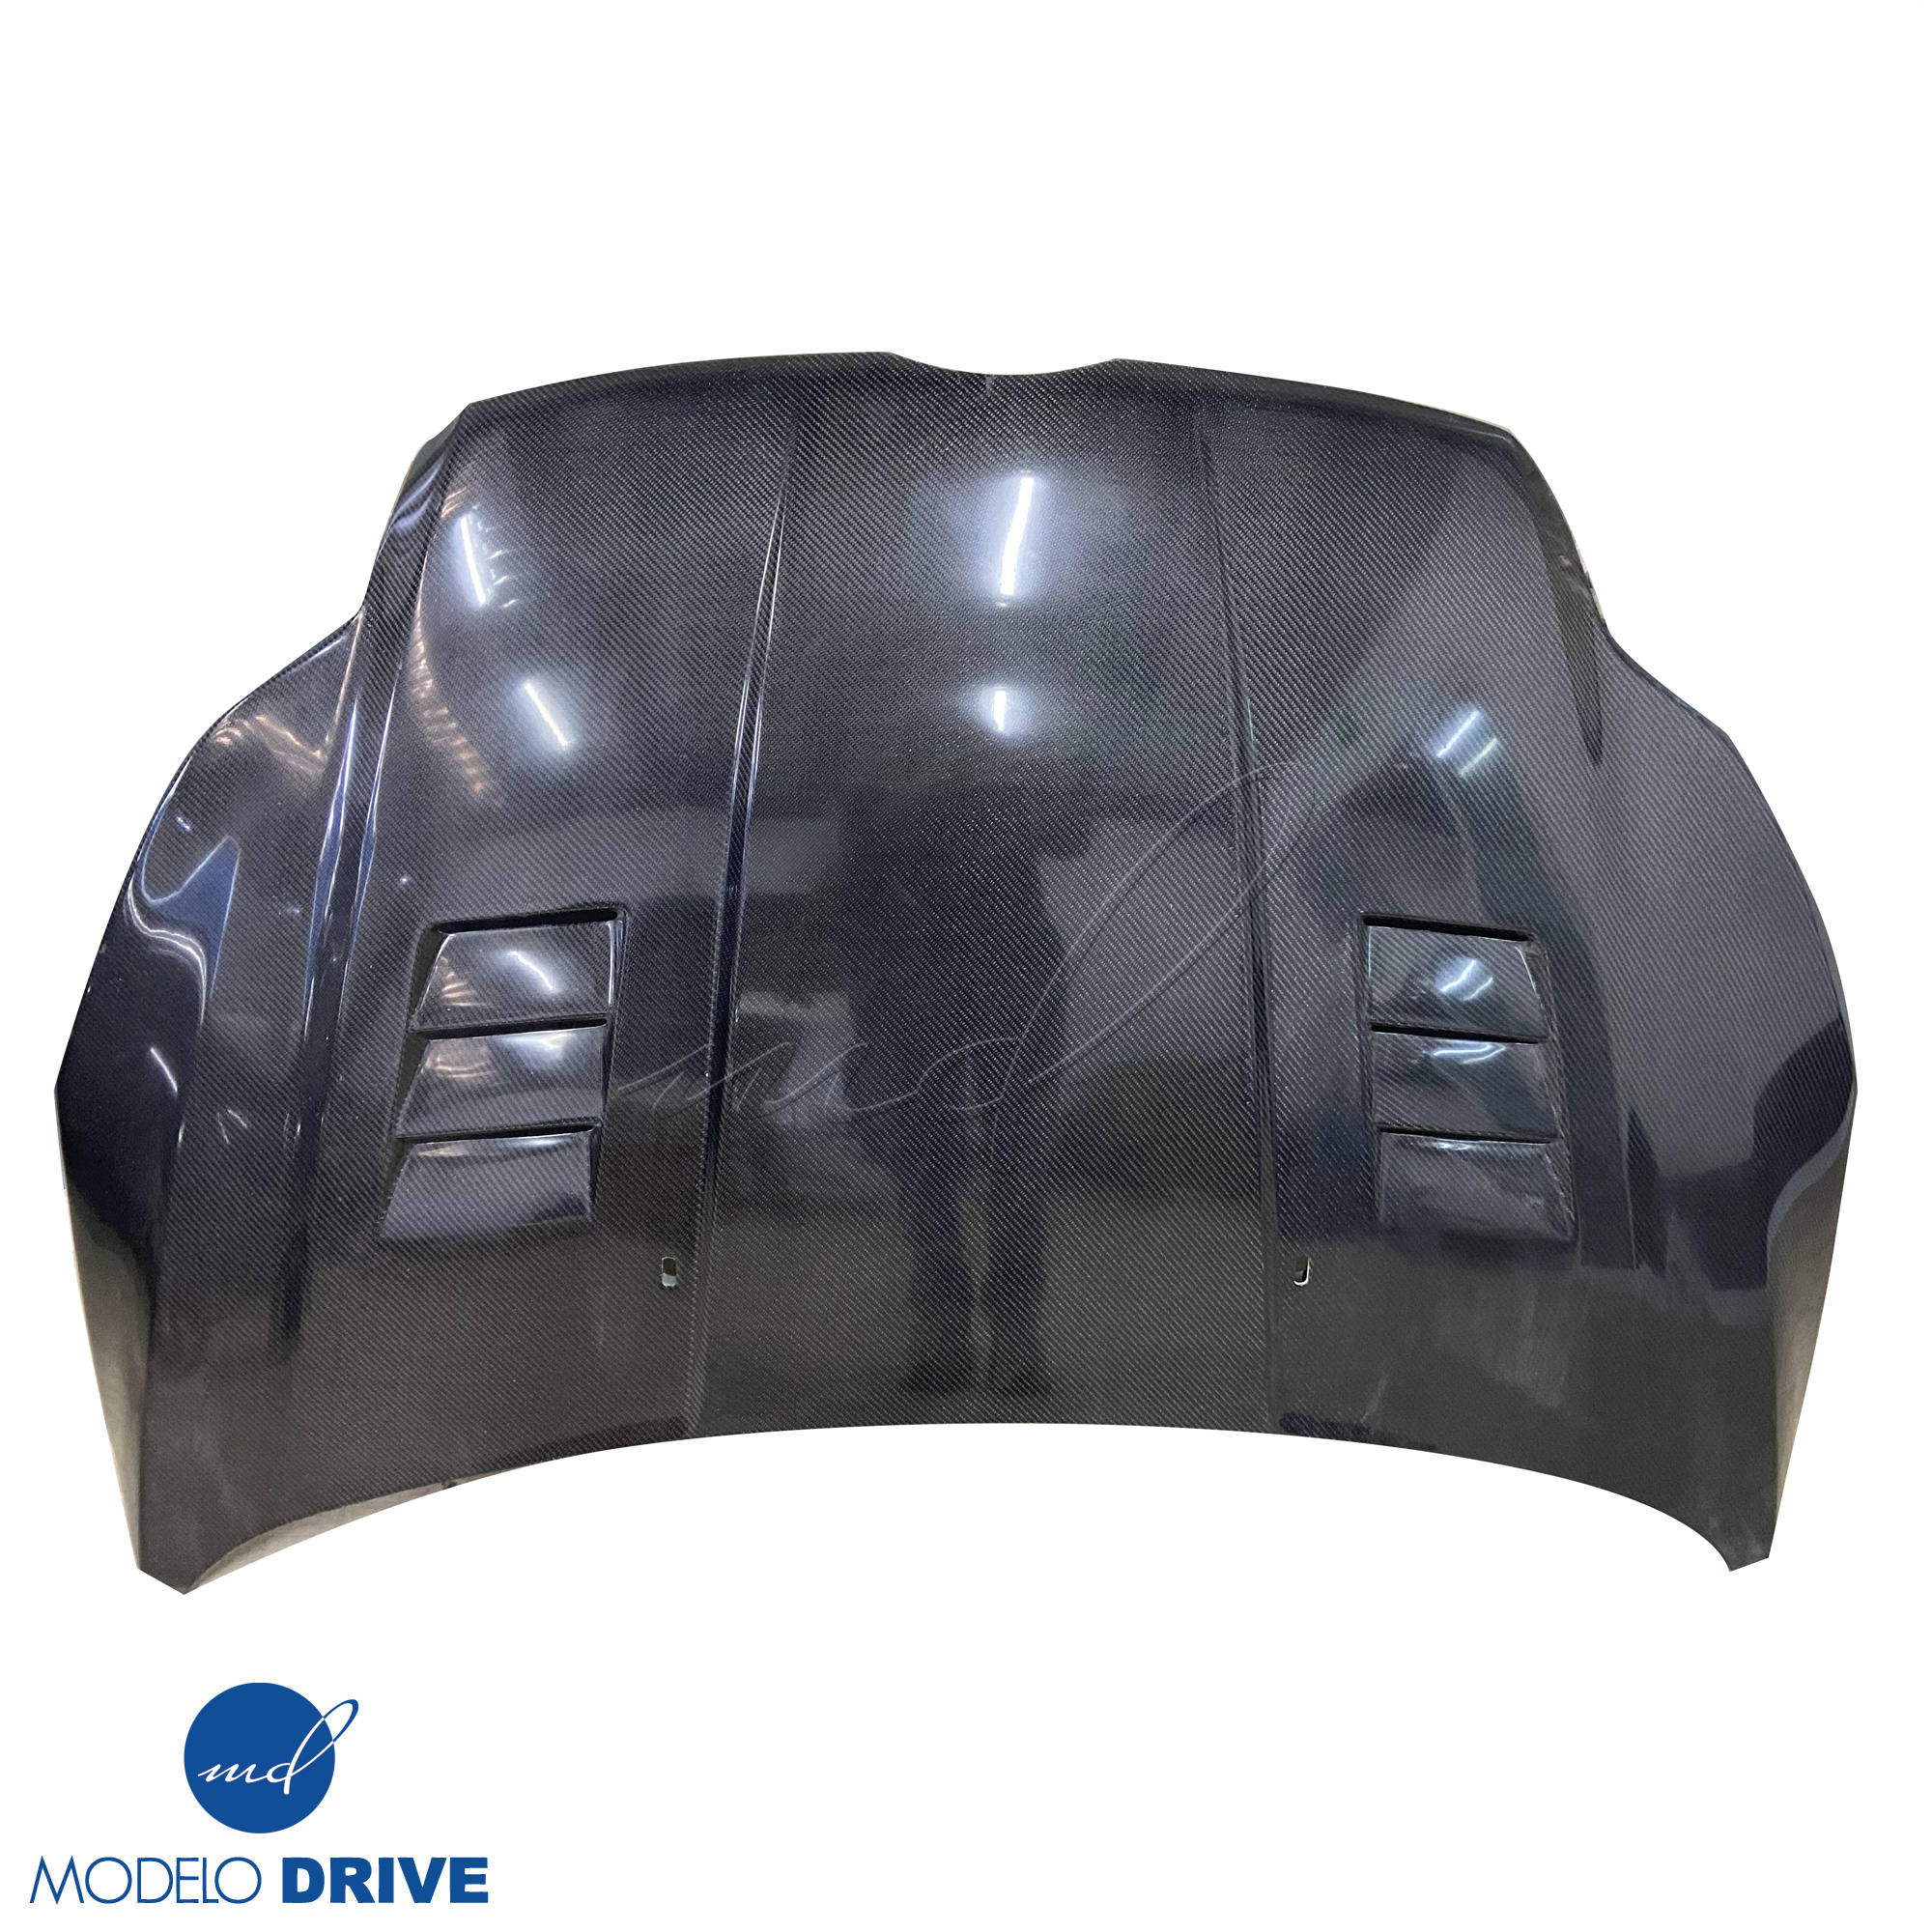 ModeloDrive Carbon Fiber KR Vented Hood > Ford Focus 2012-2014 - Image 6